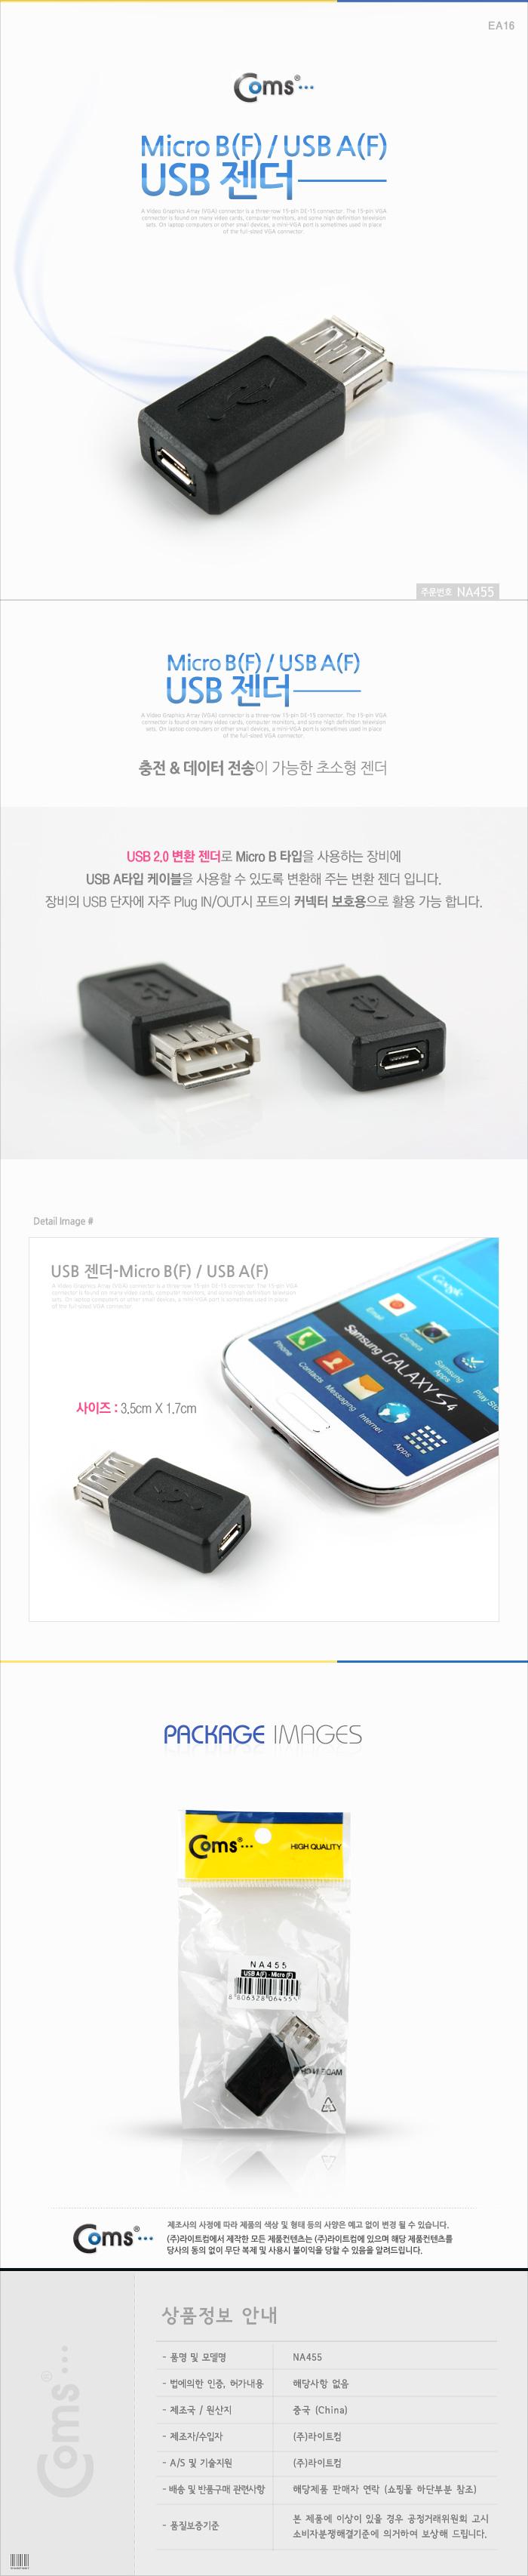 Coms USB - Micro B(F) USB A(F). 3.5cm Ű USB USB 콺 PS2